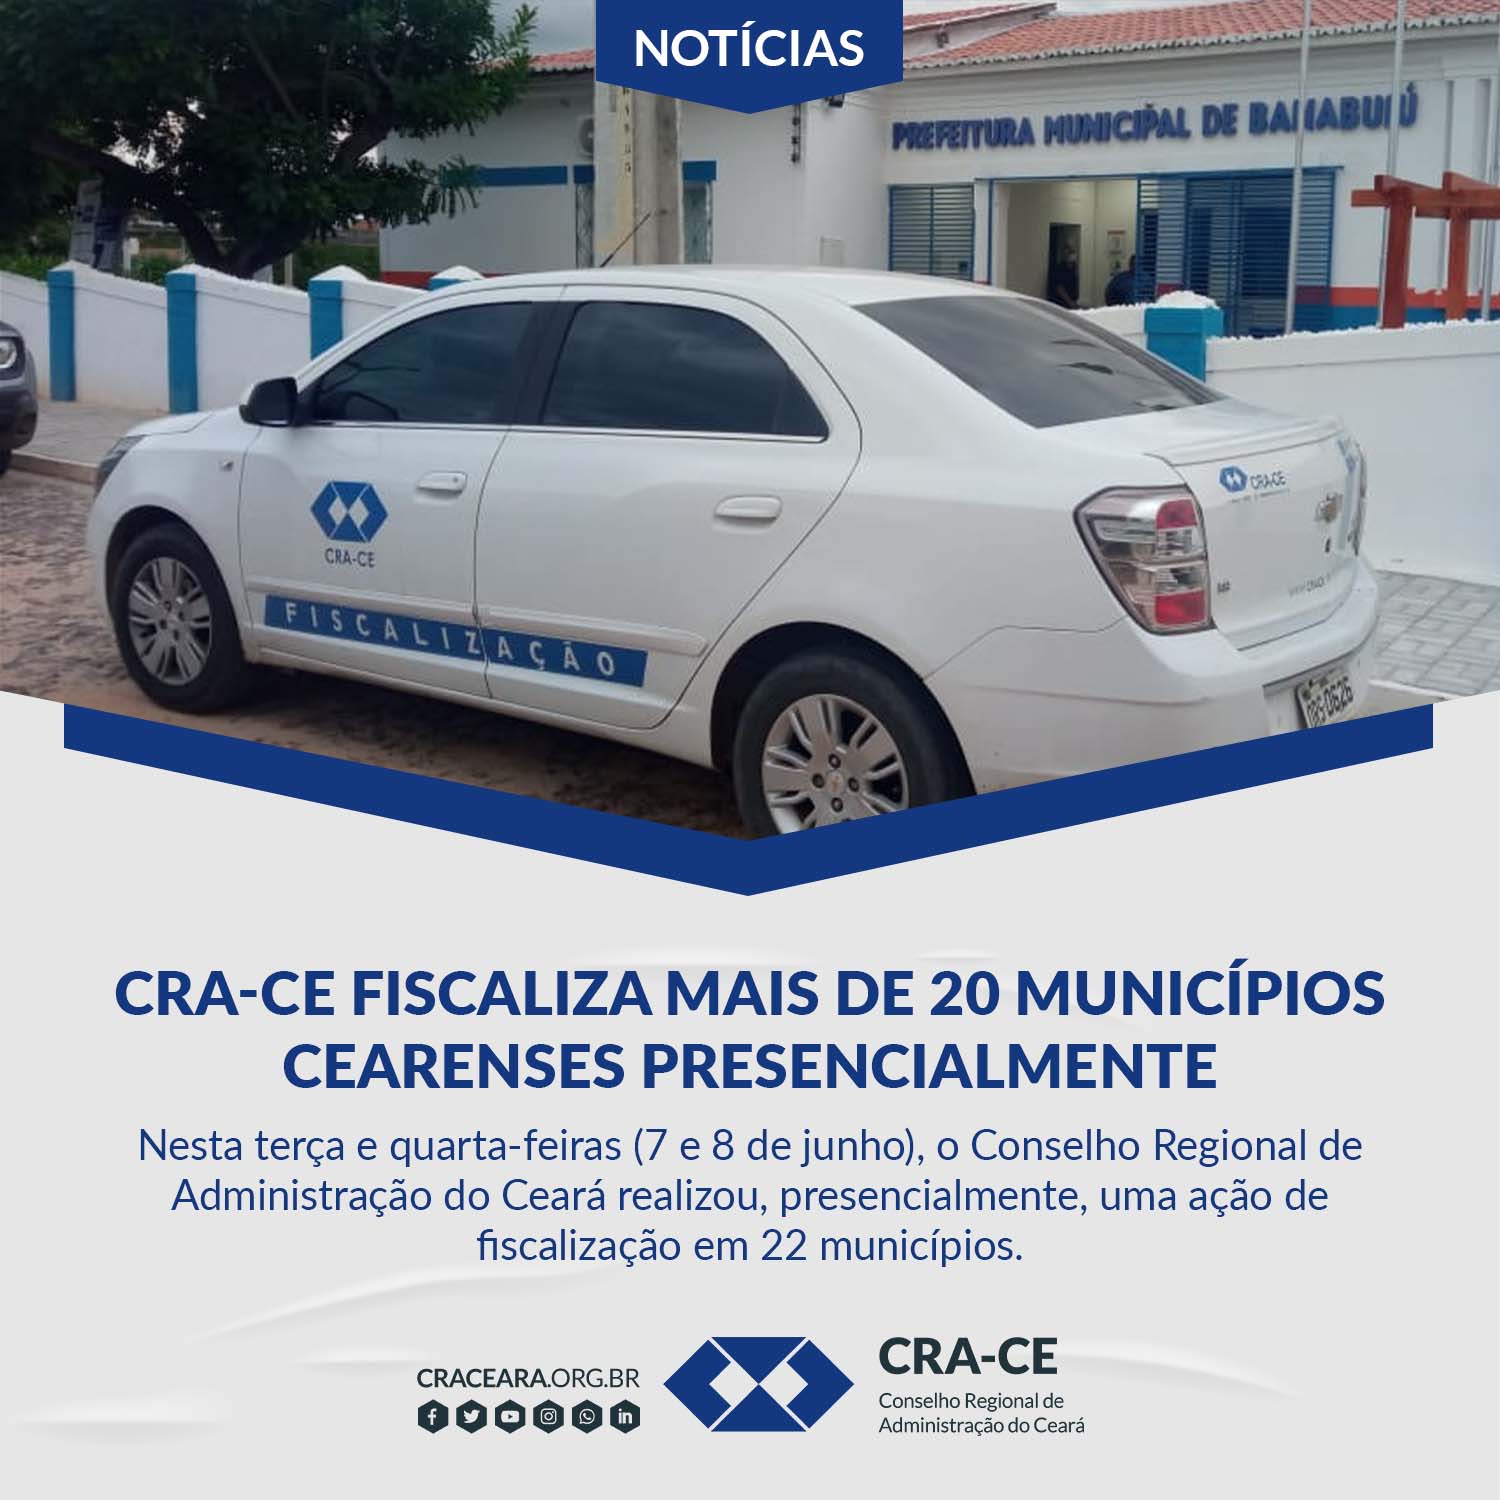 2022-06-10-cra-ce-fiscaliza-mais-de-20-municipios.jpg